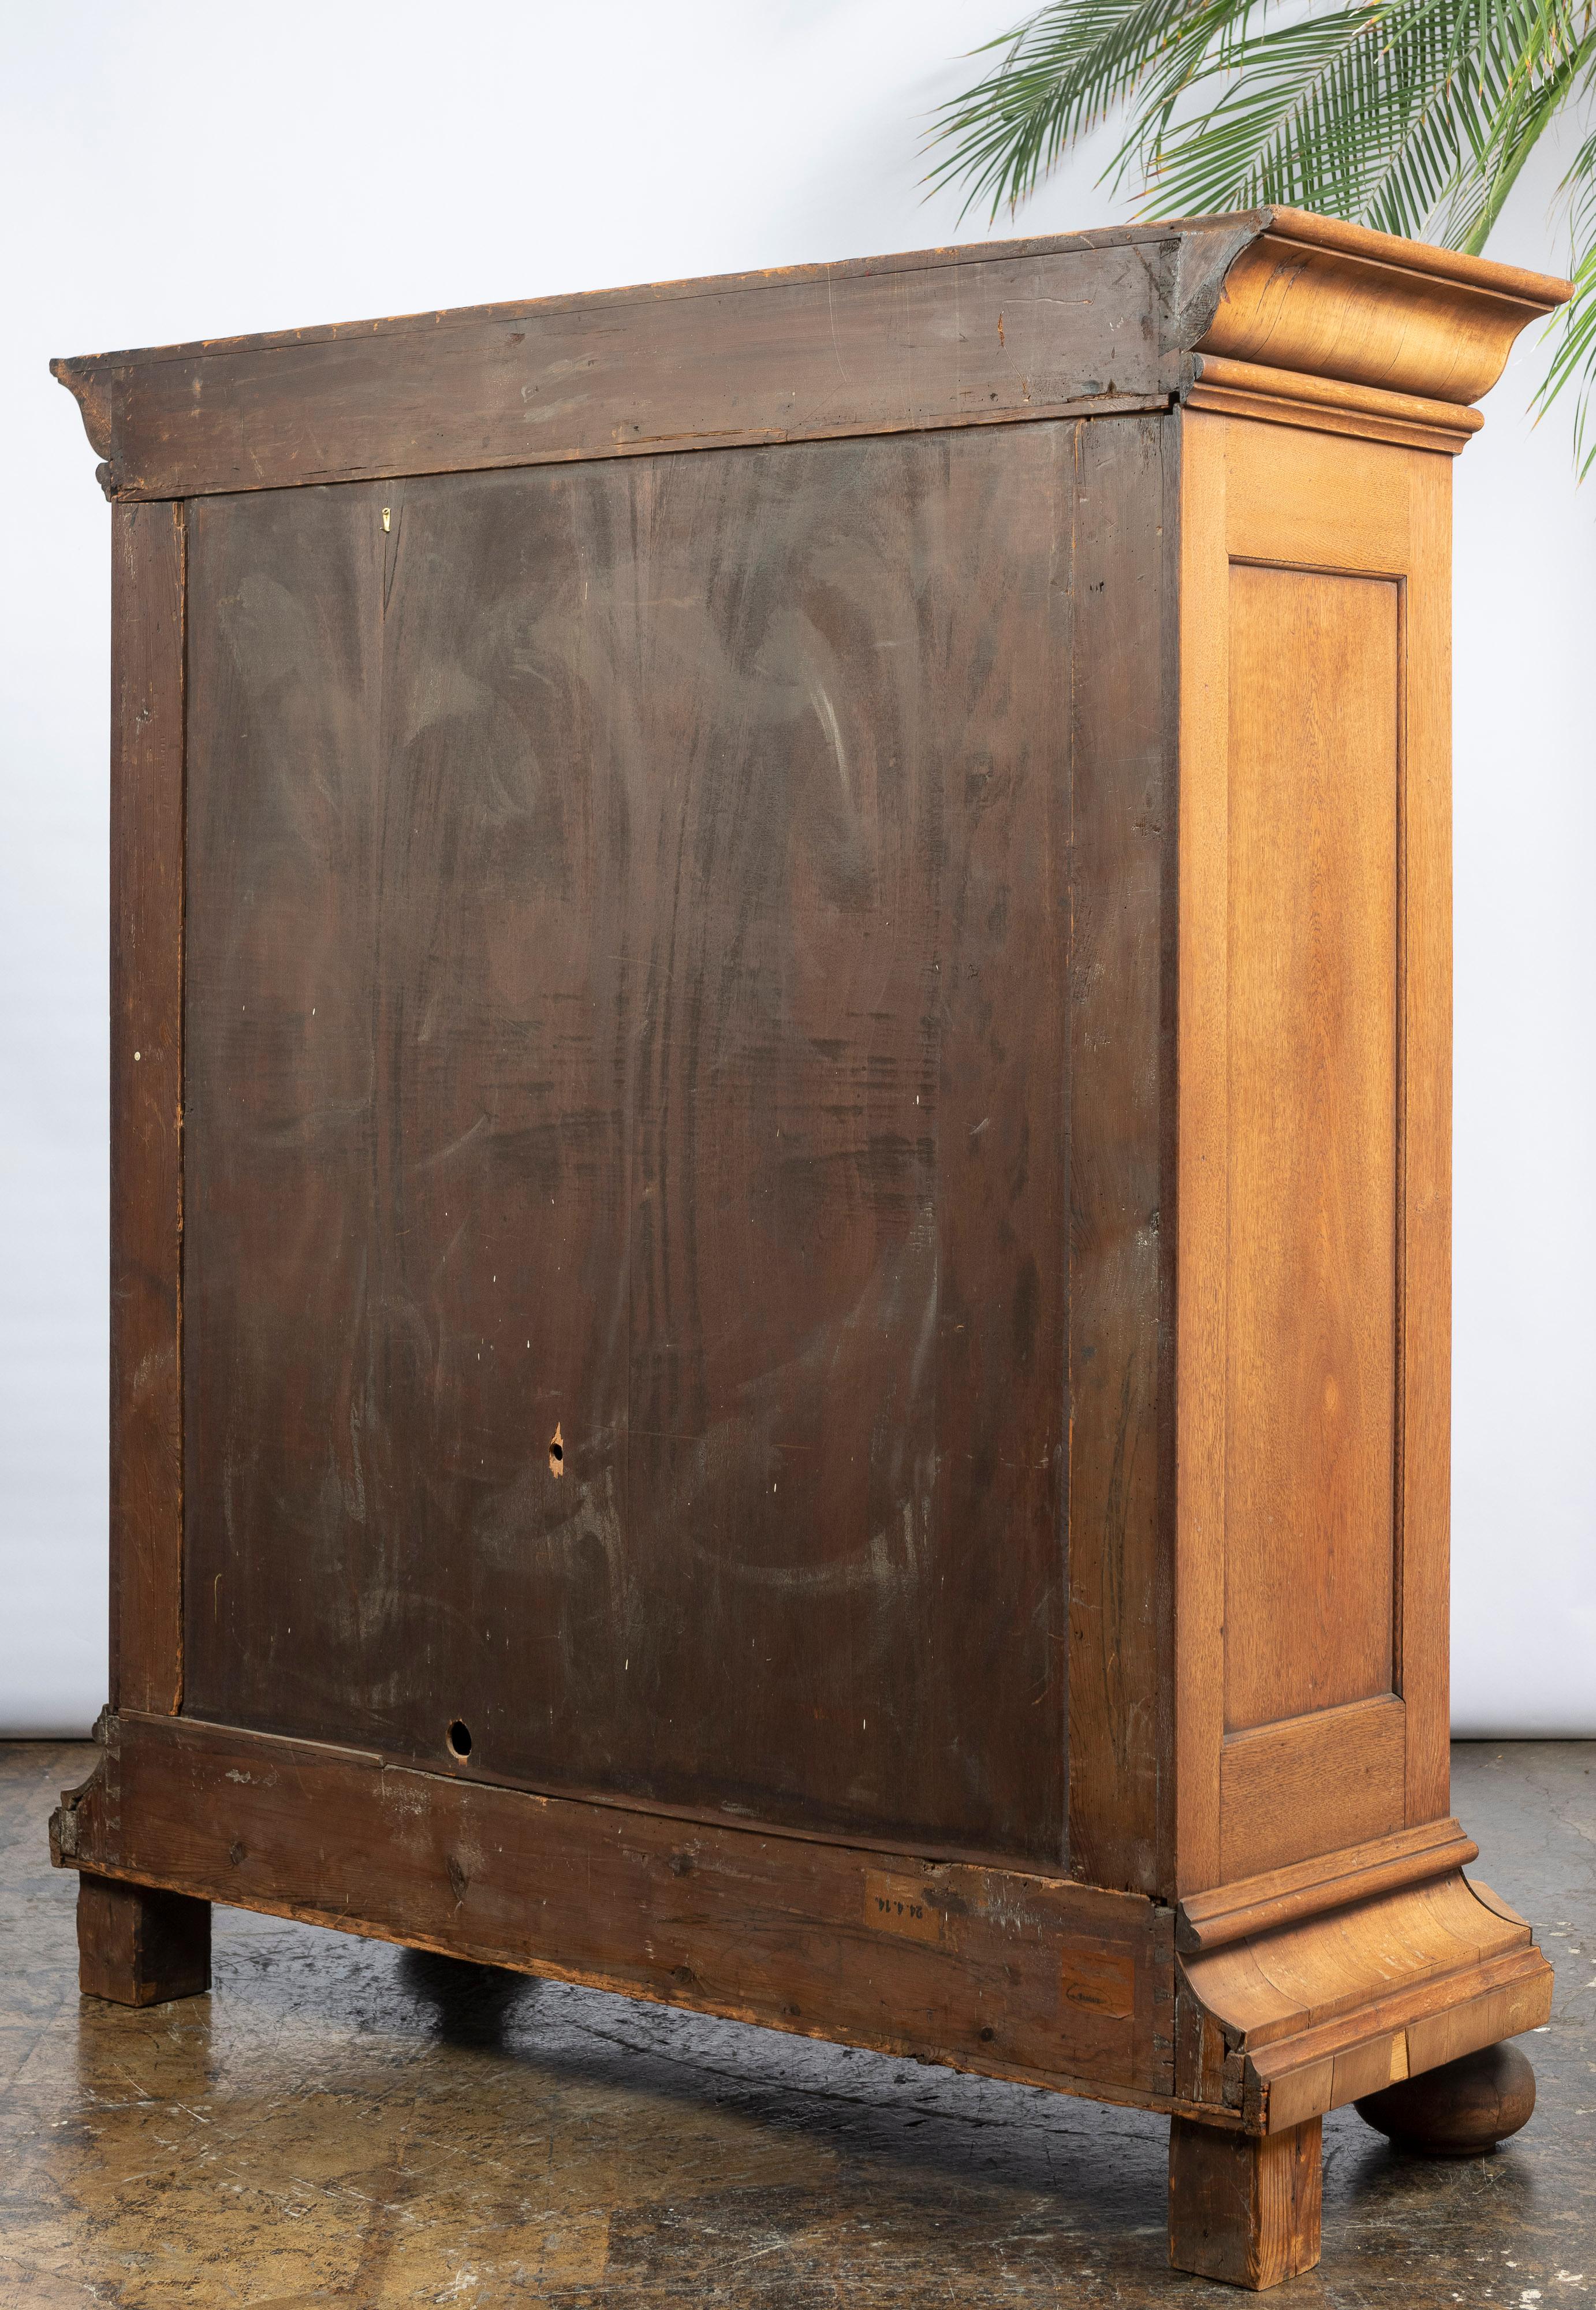 English Antique Oak Wardrobe with Corrugated Wood Doors, Shelves and Key 6